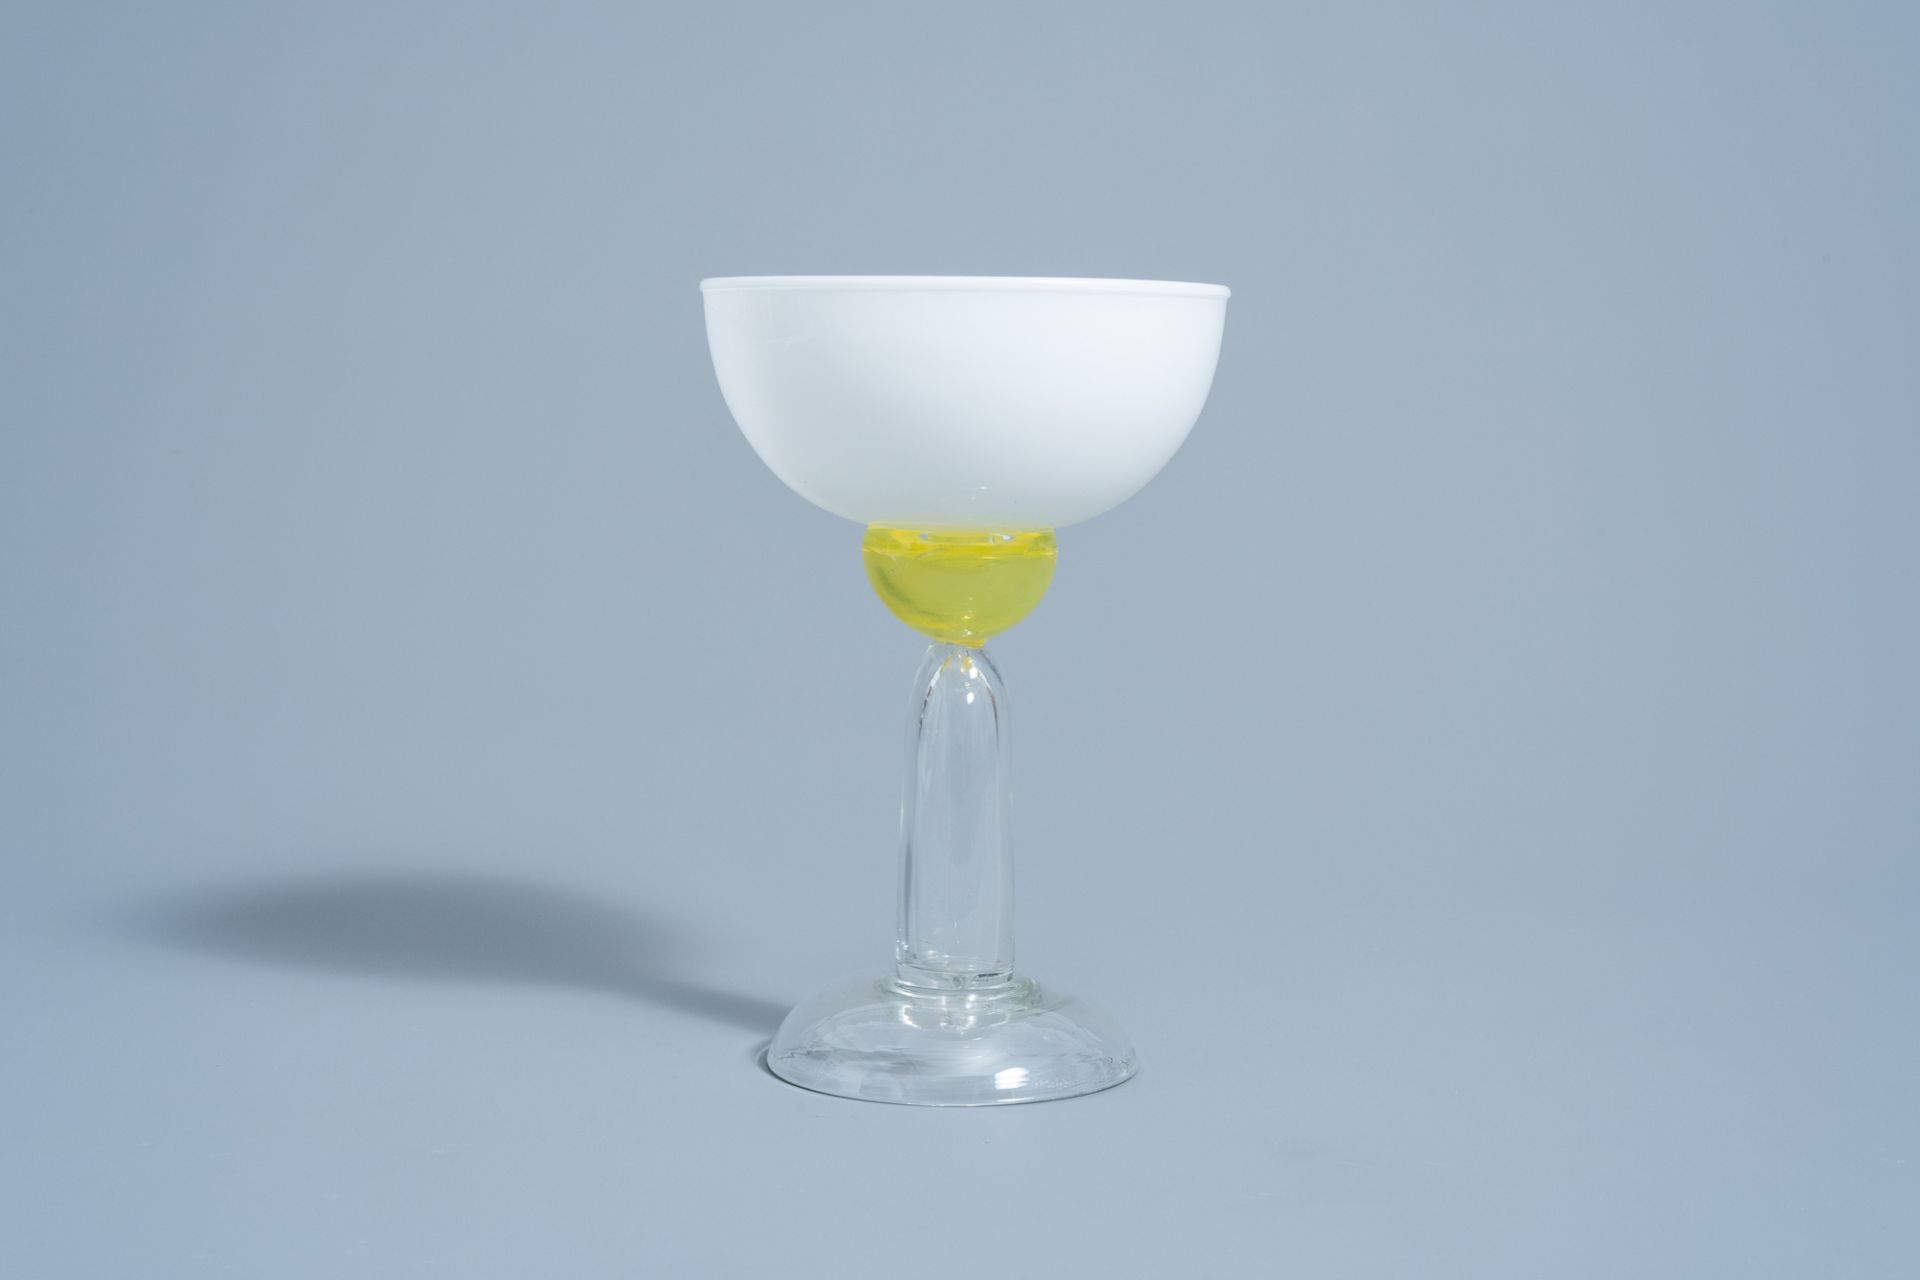 Marco Zanini (1954): 'Beltegeuse' Murano glass glass for Memphis Milano by Toso Vetri d'Arte, [1983] - Image 6 of 9